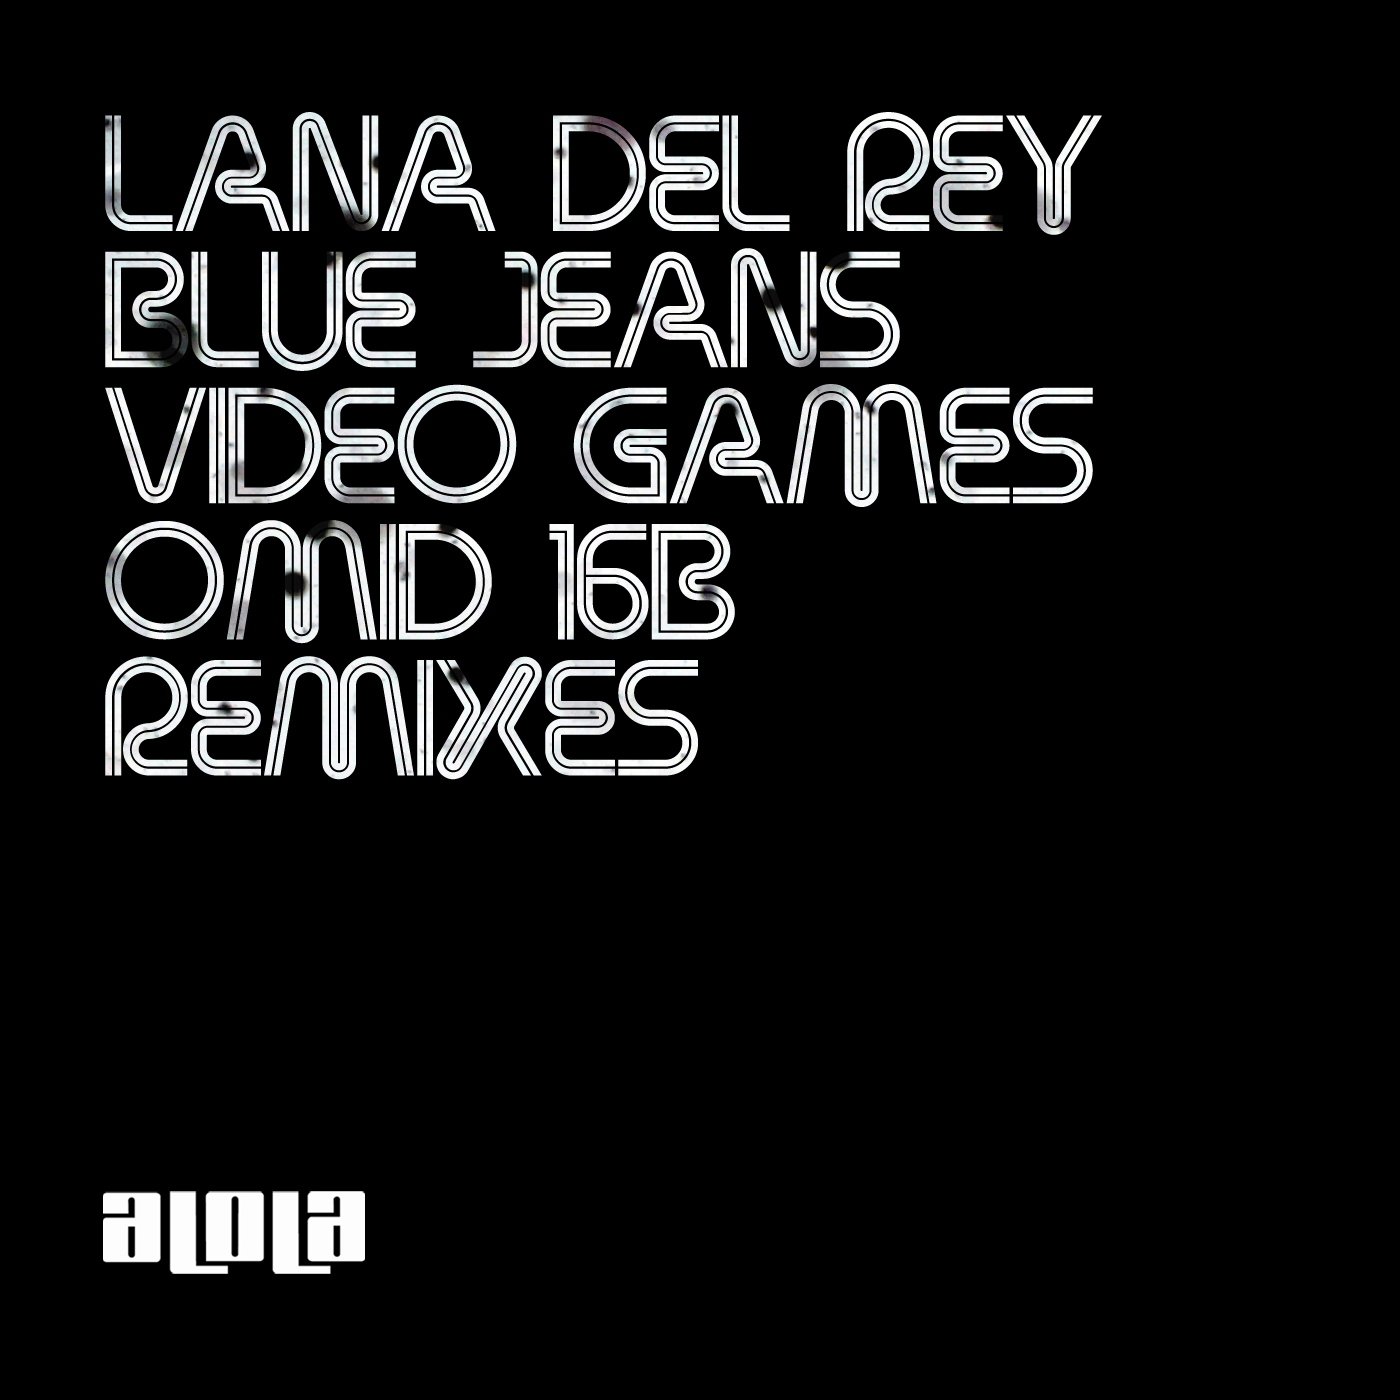 The unreleased Omid 16B remixes of Lana Del Rey